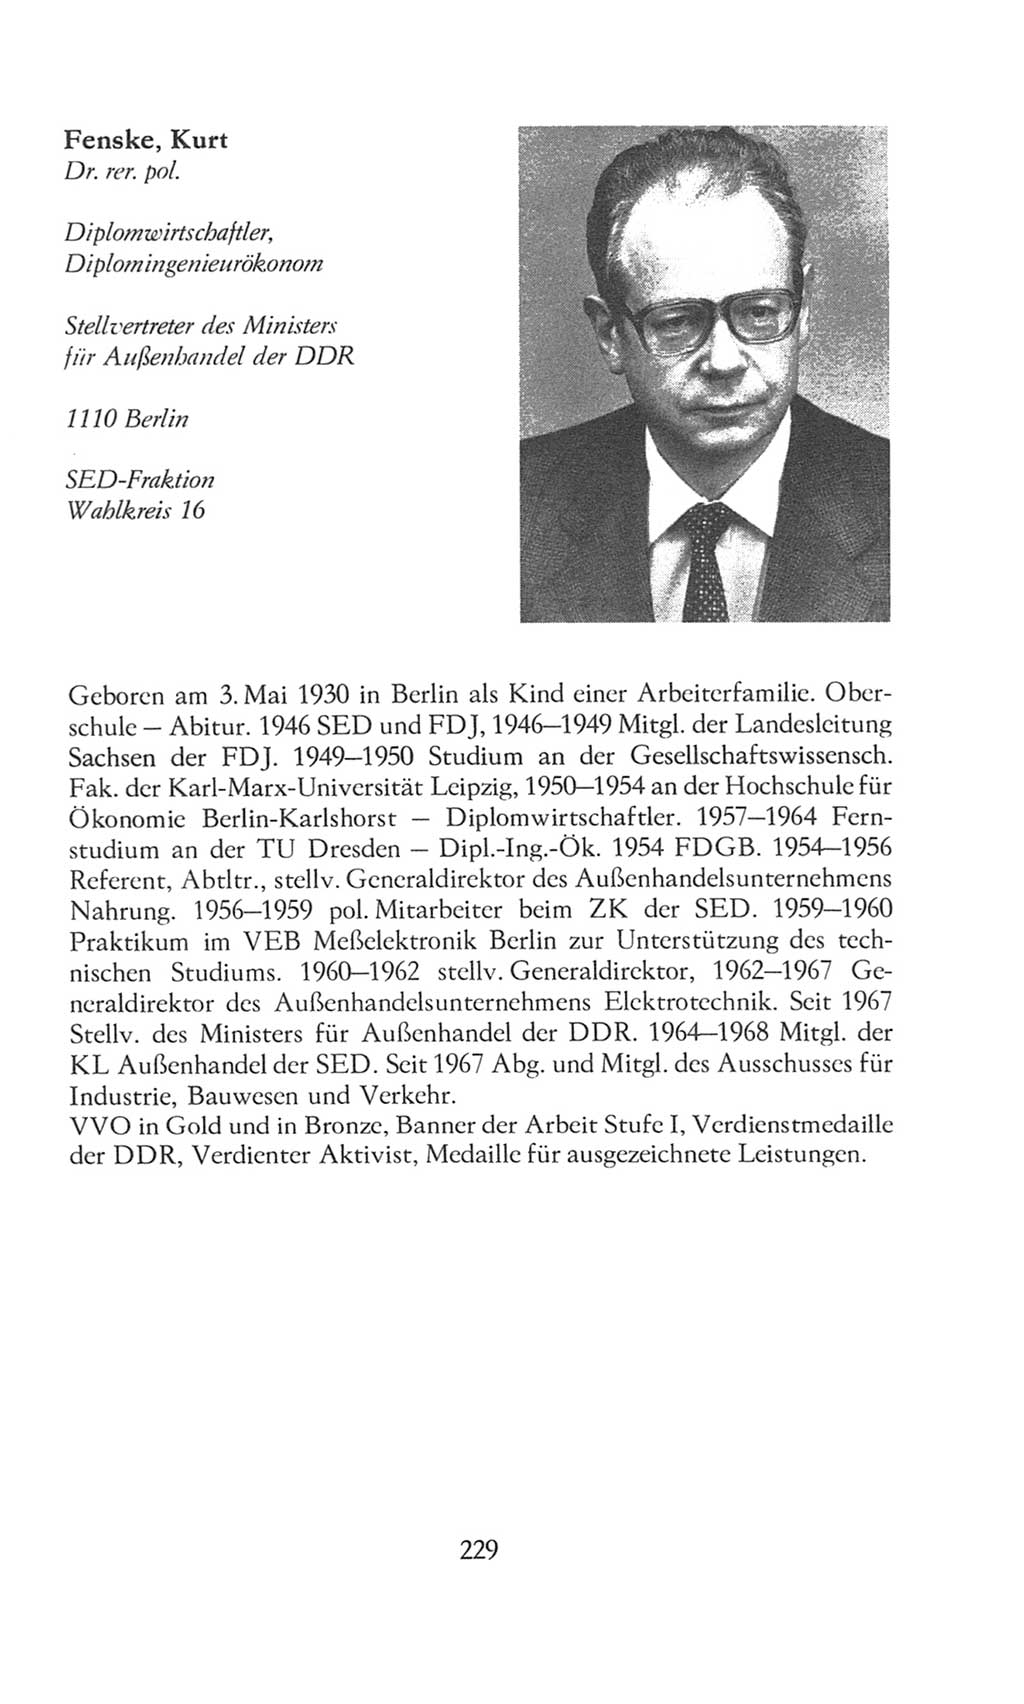 Volkskammer (VK) der Deutschen Demokratischen Republik (DDR), 8. Wahlperiode 1981-1986, Seite 229 (VK. DDR 8. WP. 1981-1986, S. 229)